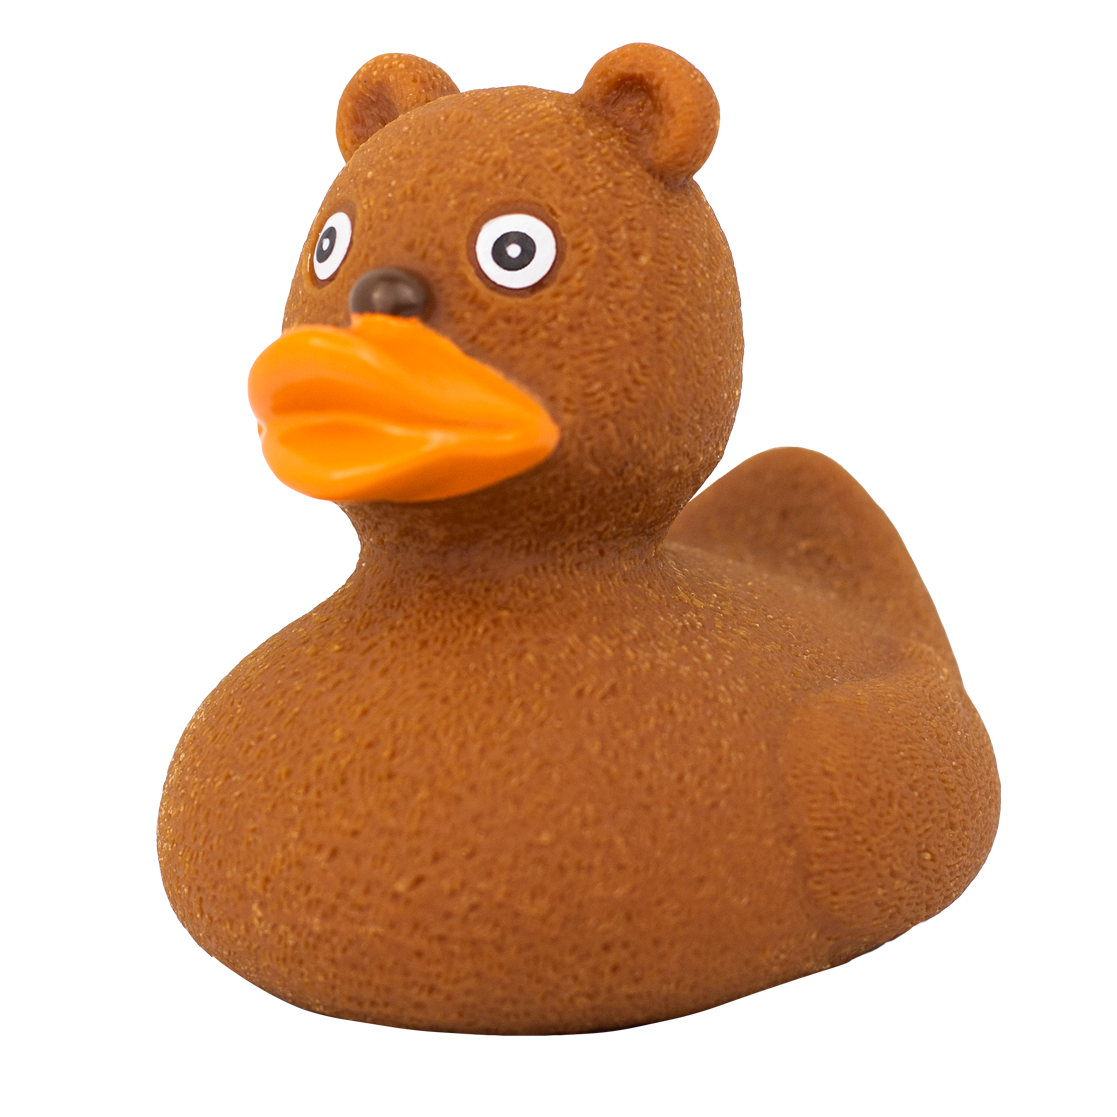 Teddy bear duck